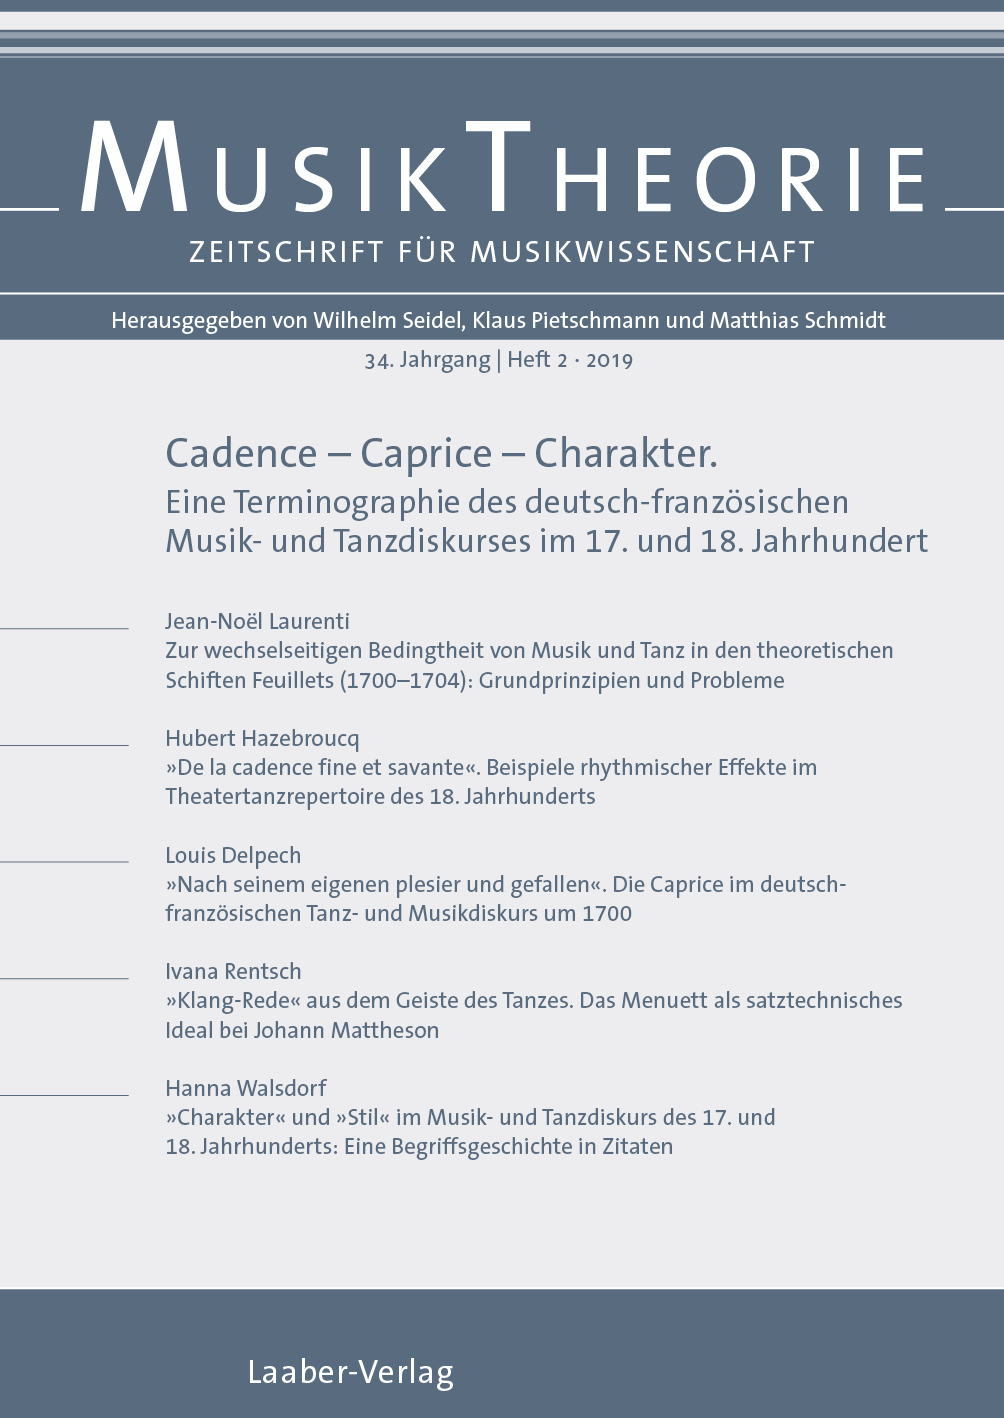 Musiktheorie Heft 2/2019